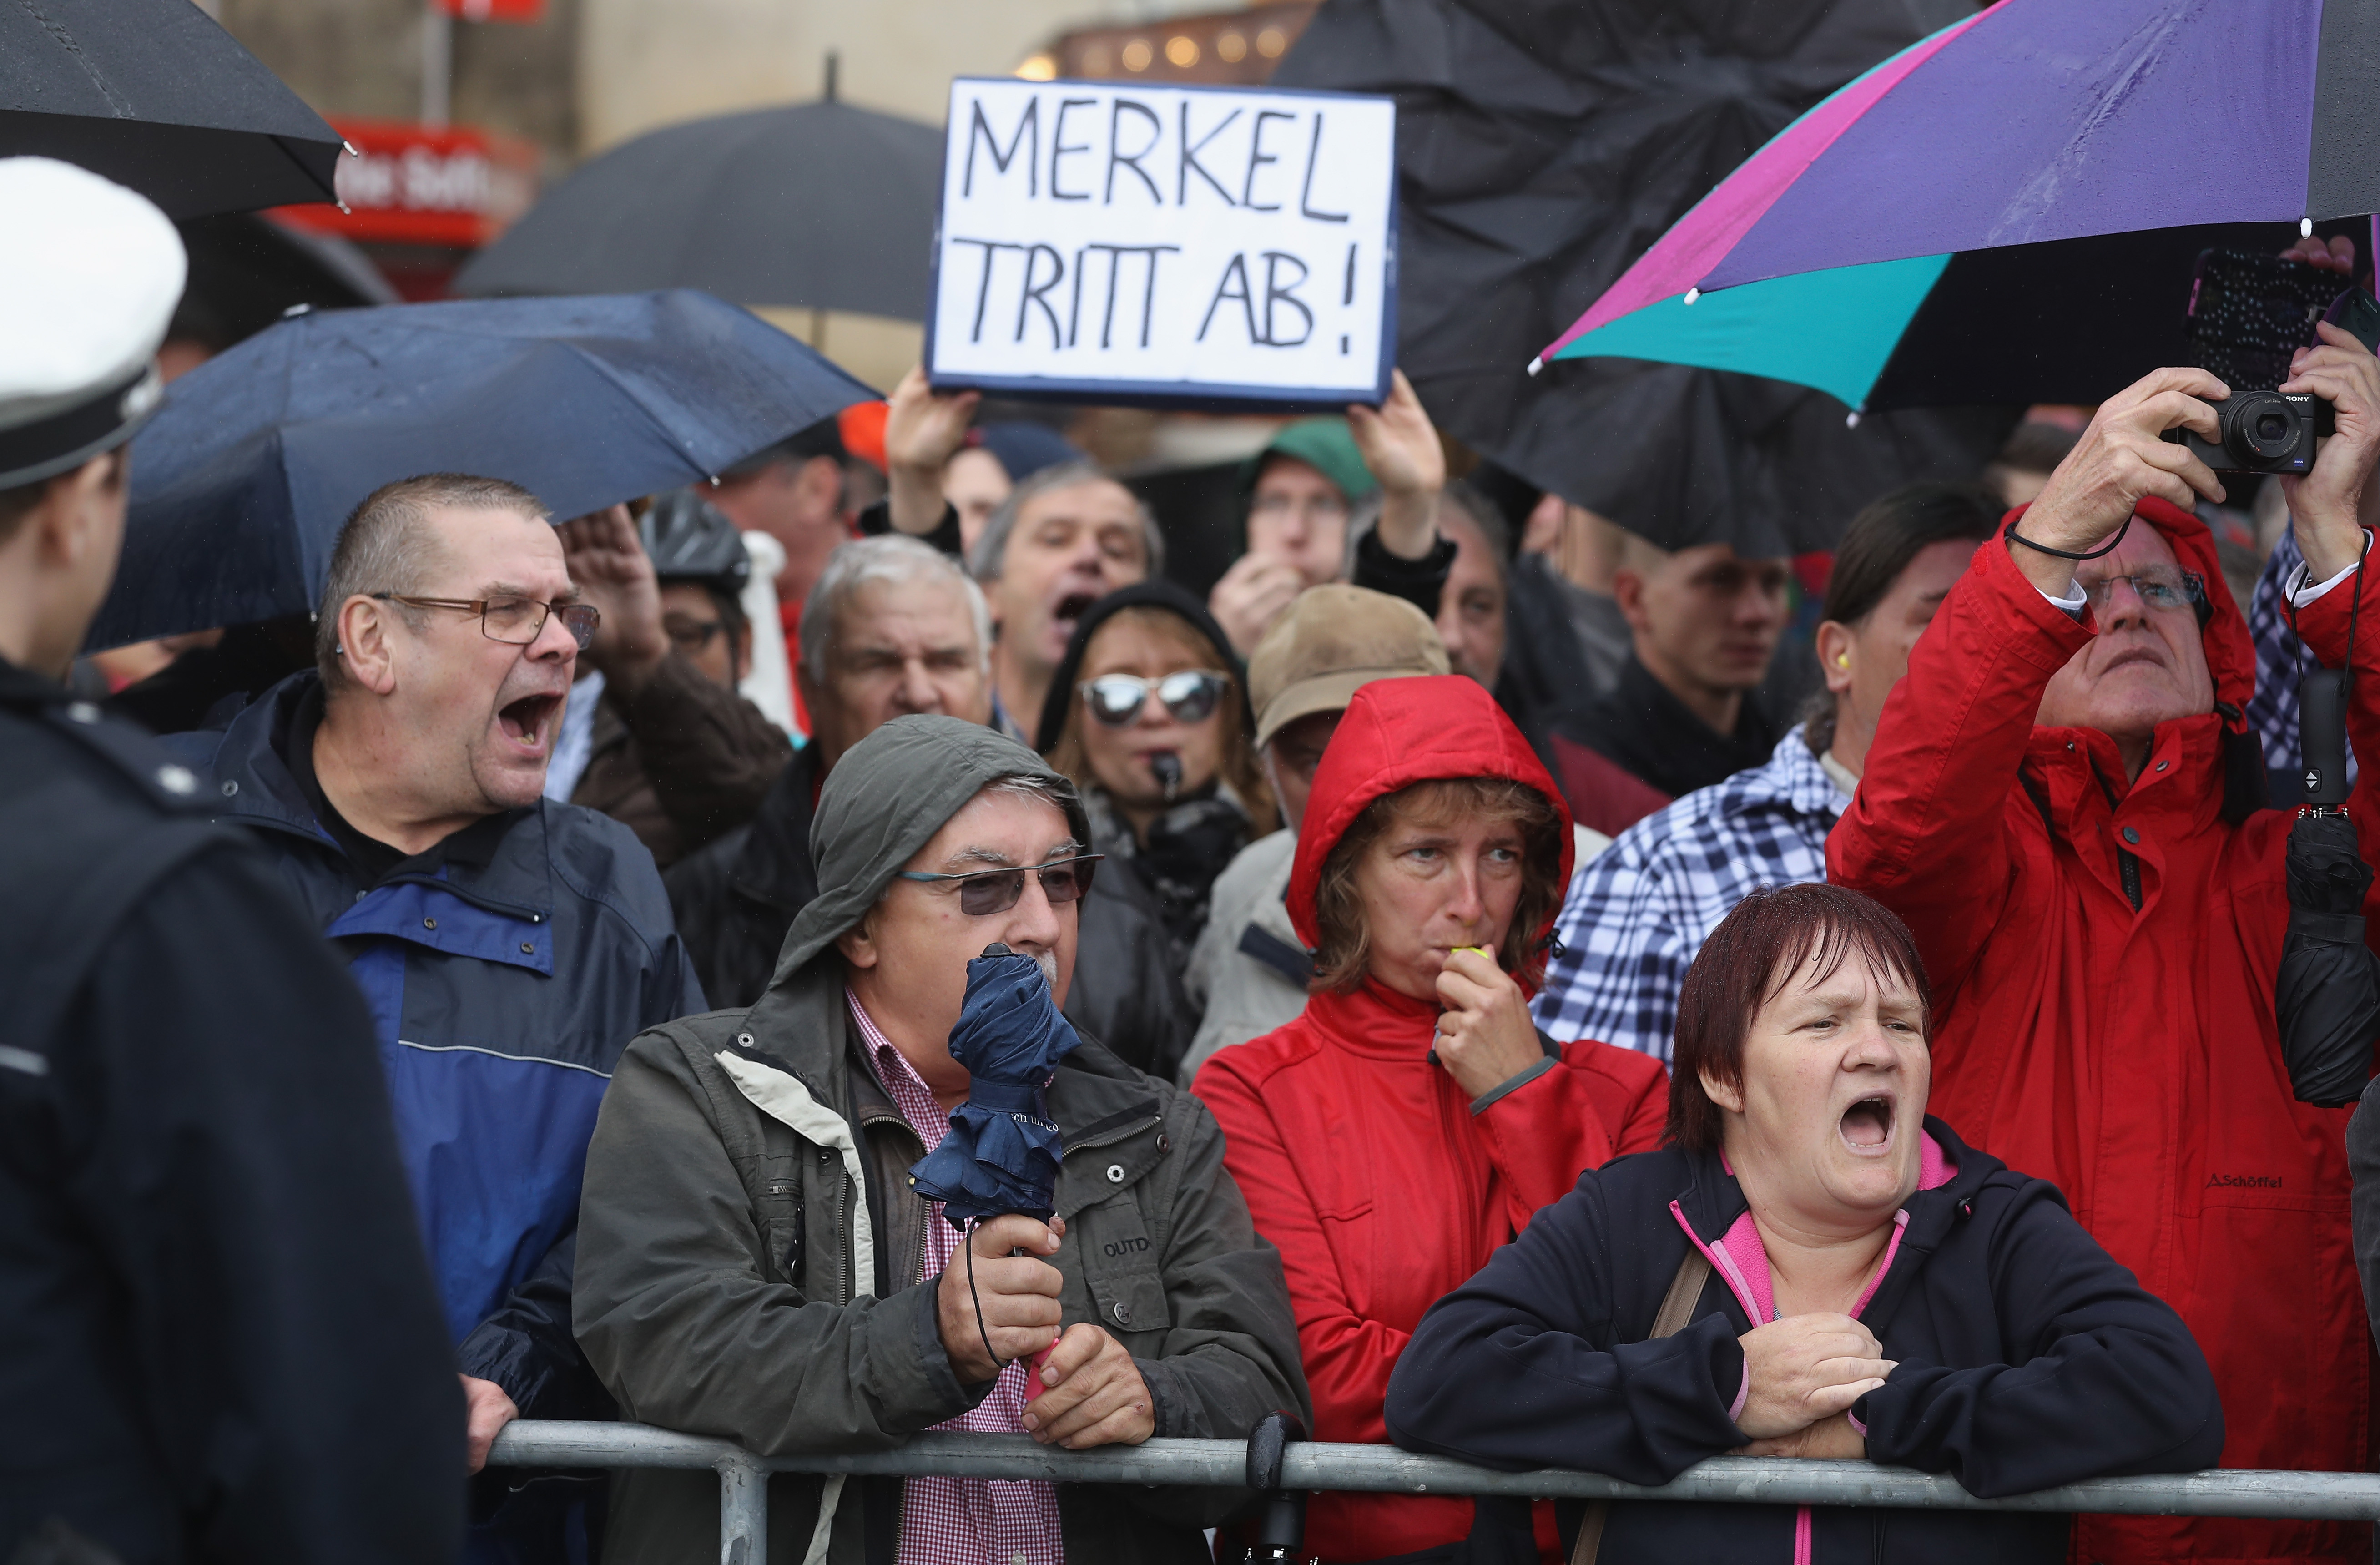 GdP-Vize Radek verteidigt Vorgehen der sächsischen Polizei – Aber Gruß an Pegida-Demonstranten ging „zu weit“